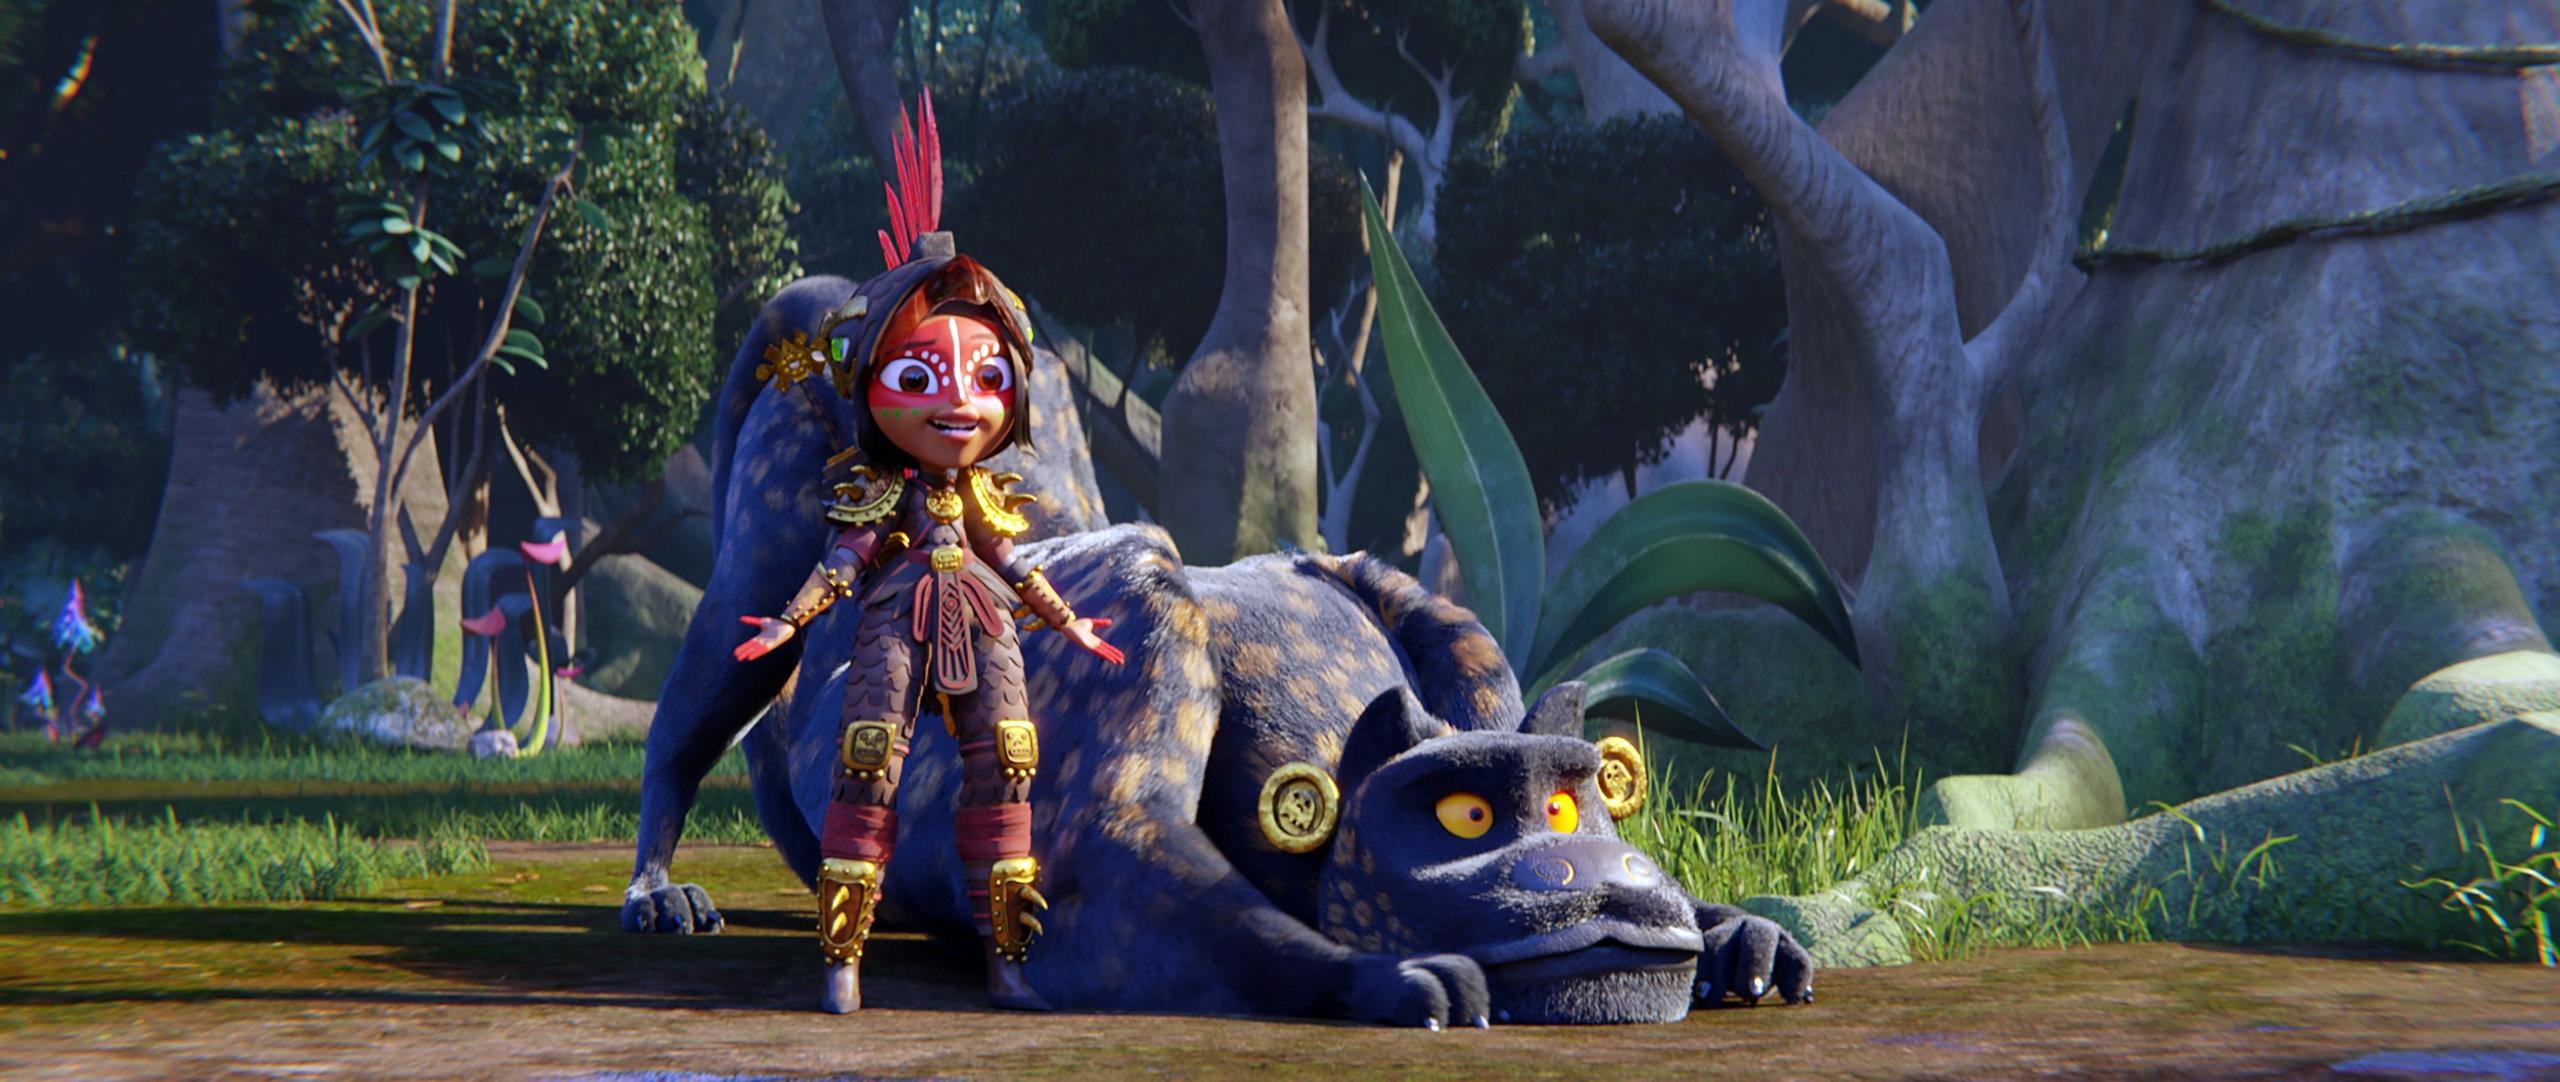 Fotograma cedido por Netflix donde aparece la princesa Maya, a quien presta su voz la actriz Zoe Saldaña, durante una escena de la serie de animación "Maya and the Three". EFE/Netflix
